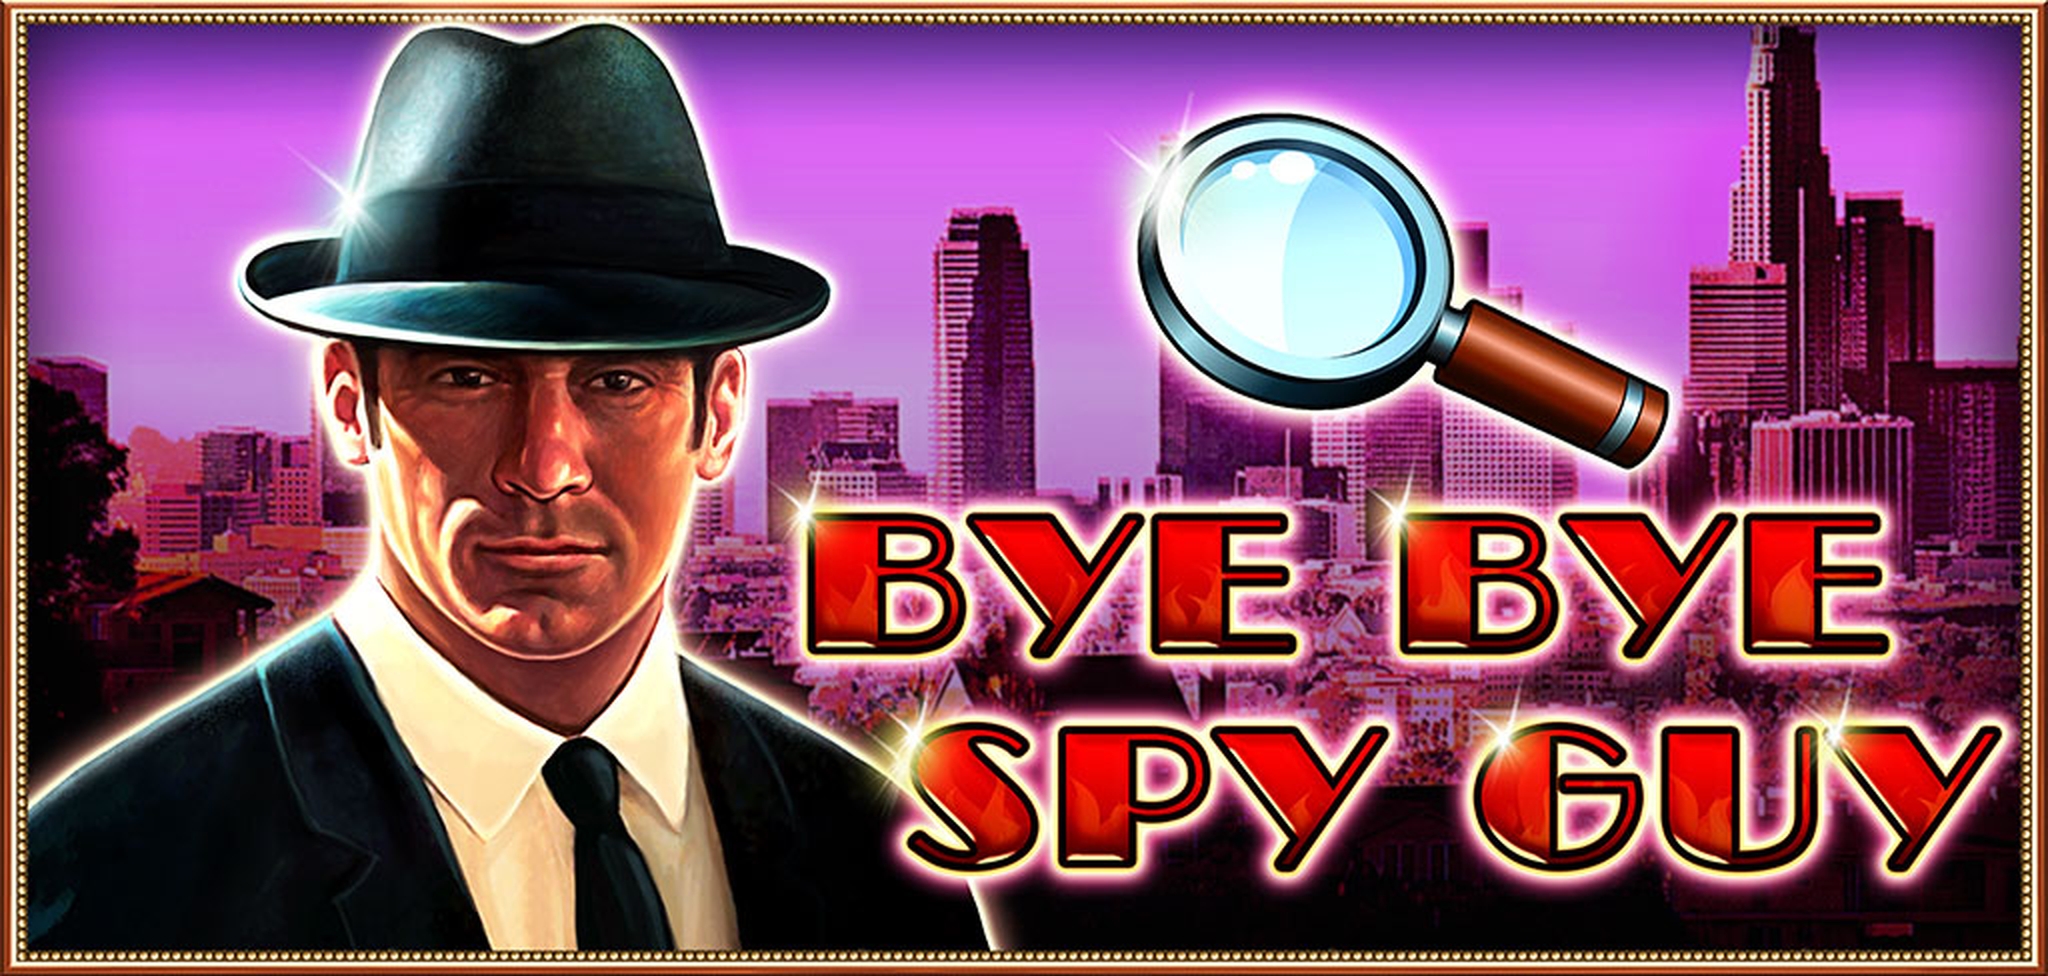 Bye Bye Spy Guy